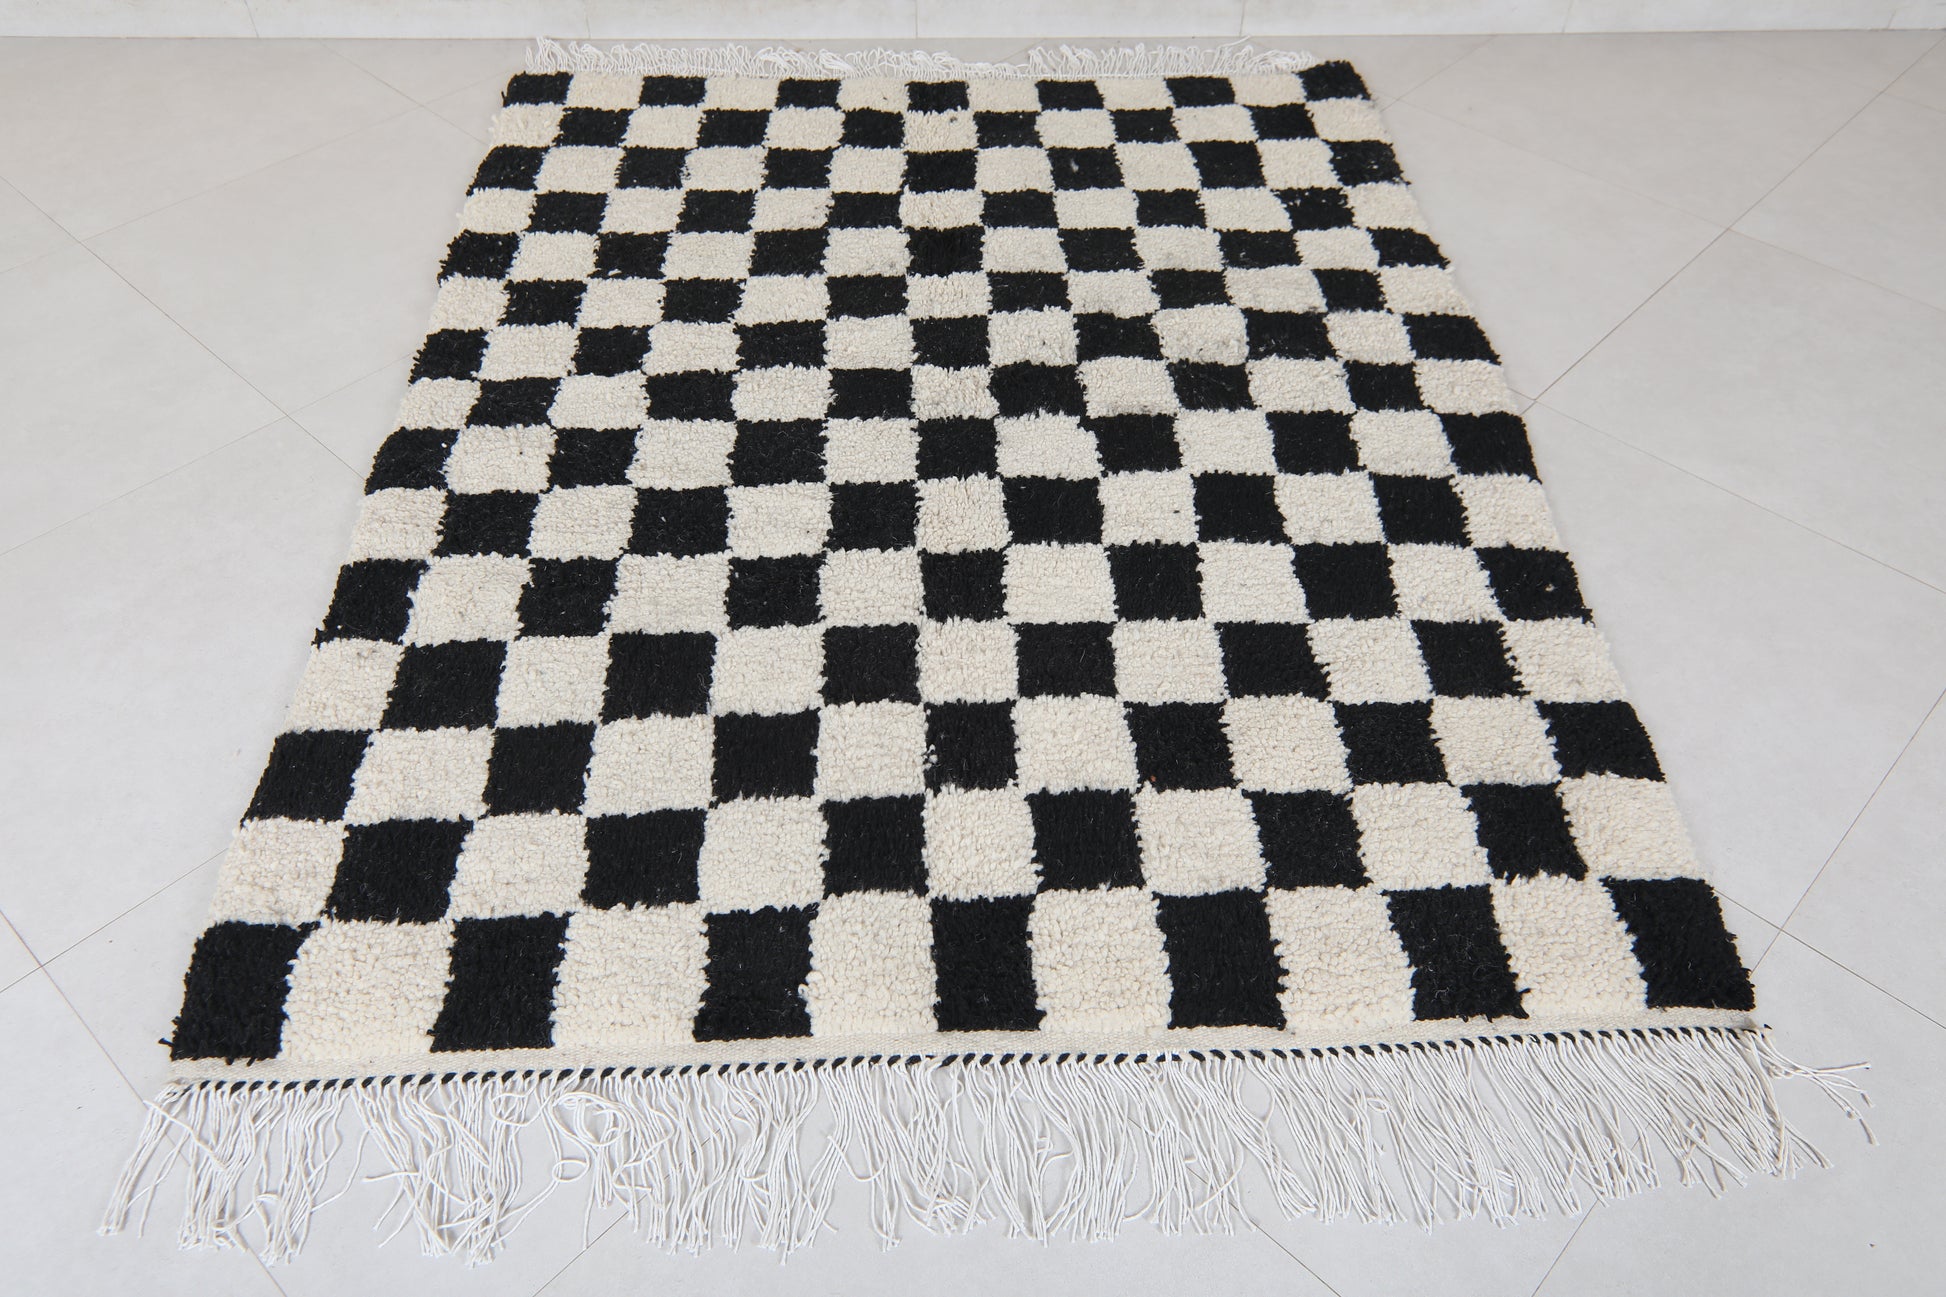 Moroccan berber rug 4.9 X 6.1 Feet - Beni ourain rugs